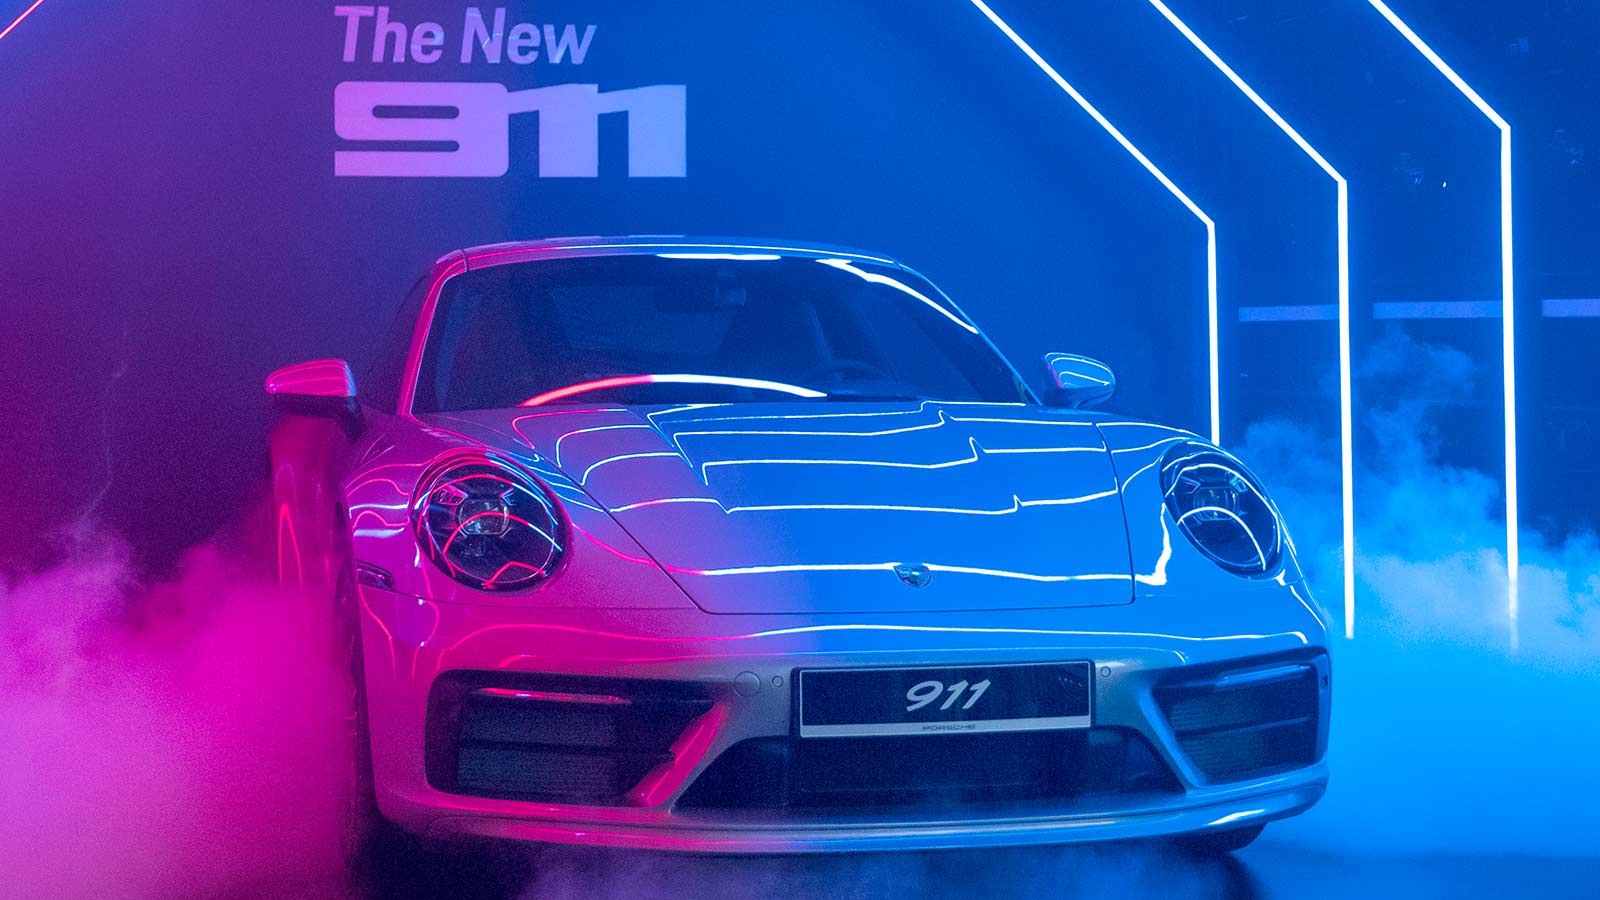 Hình nền siêu xe Porsche sẽ khiến bạn phải trầm trồ về sự mạnh mẽ và đẳng cấp của những chiếc xe này. Với những hình ảnh đầy sáng tạo và nghệ thuật, bạn có thể tùy chọn cho mình một bức hình nền độc đáo để trang trí cho chiếc máy tính hay điện thoại của mình.